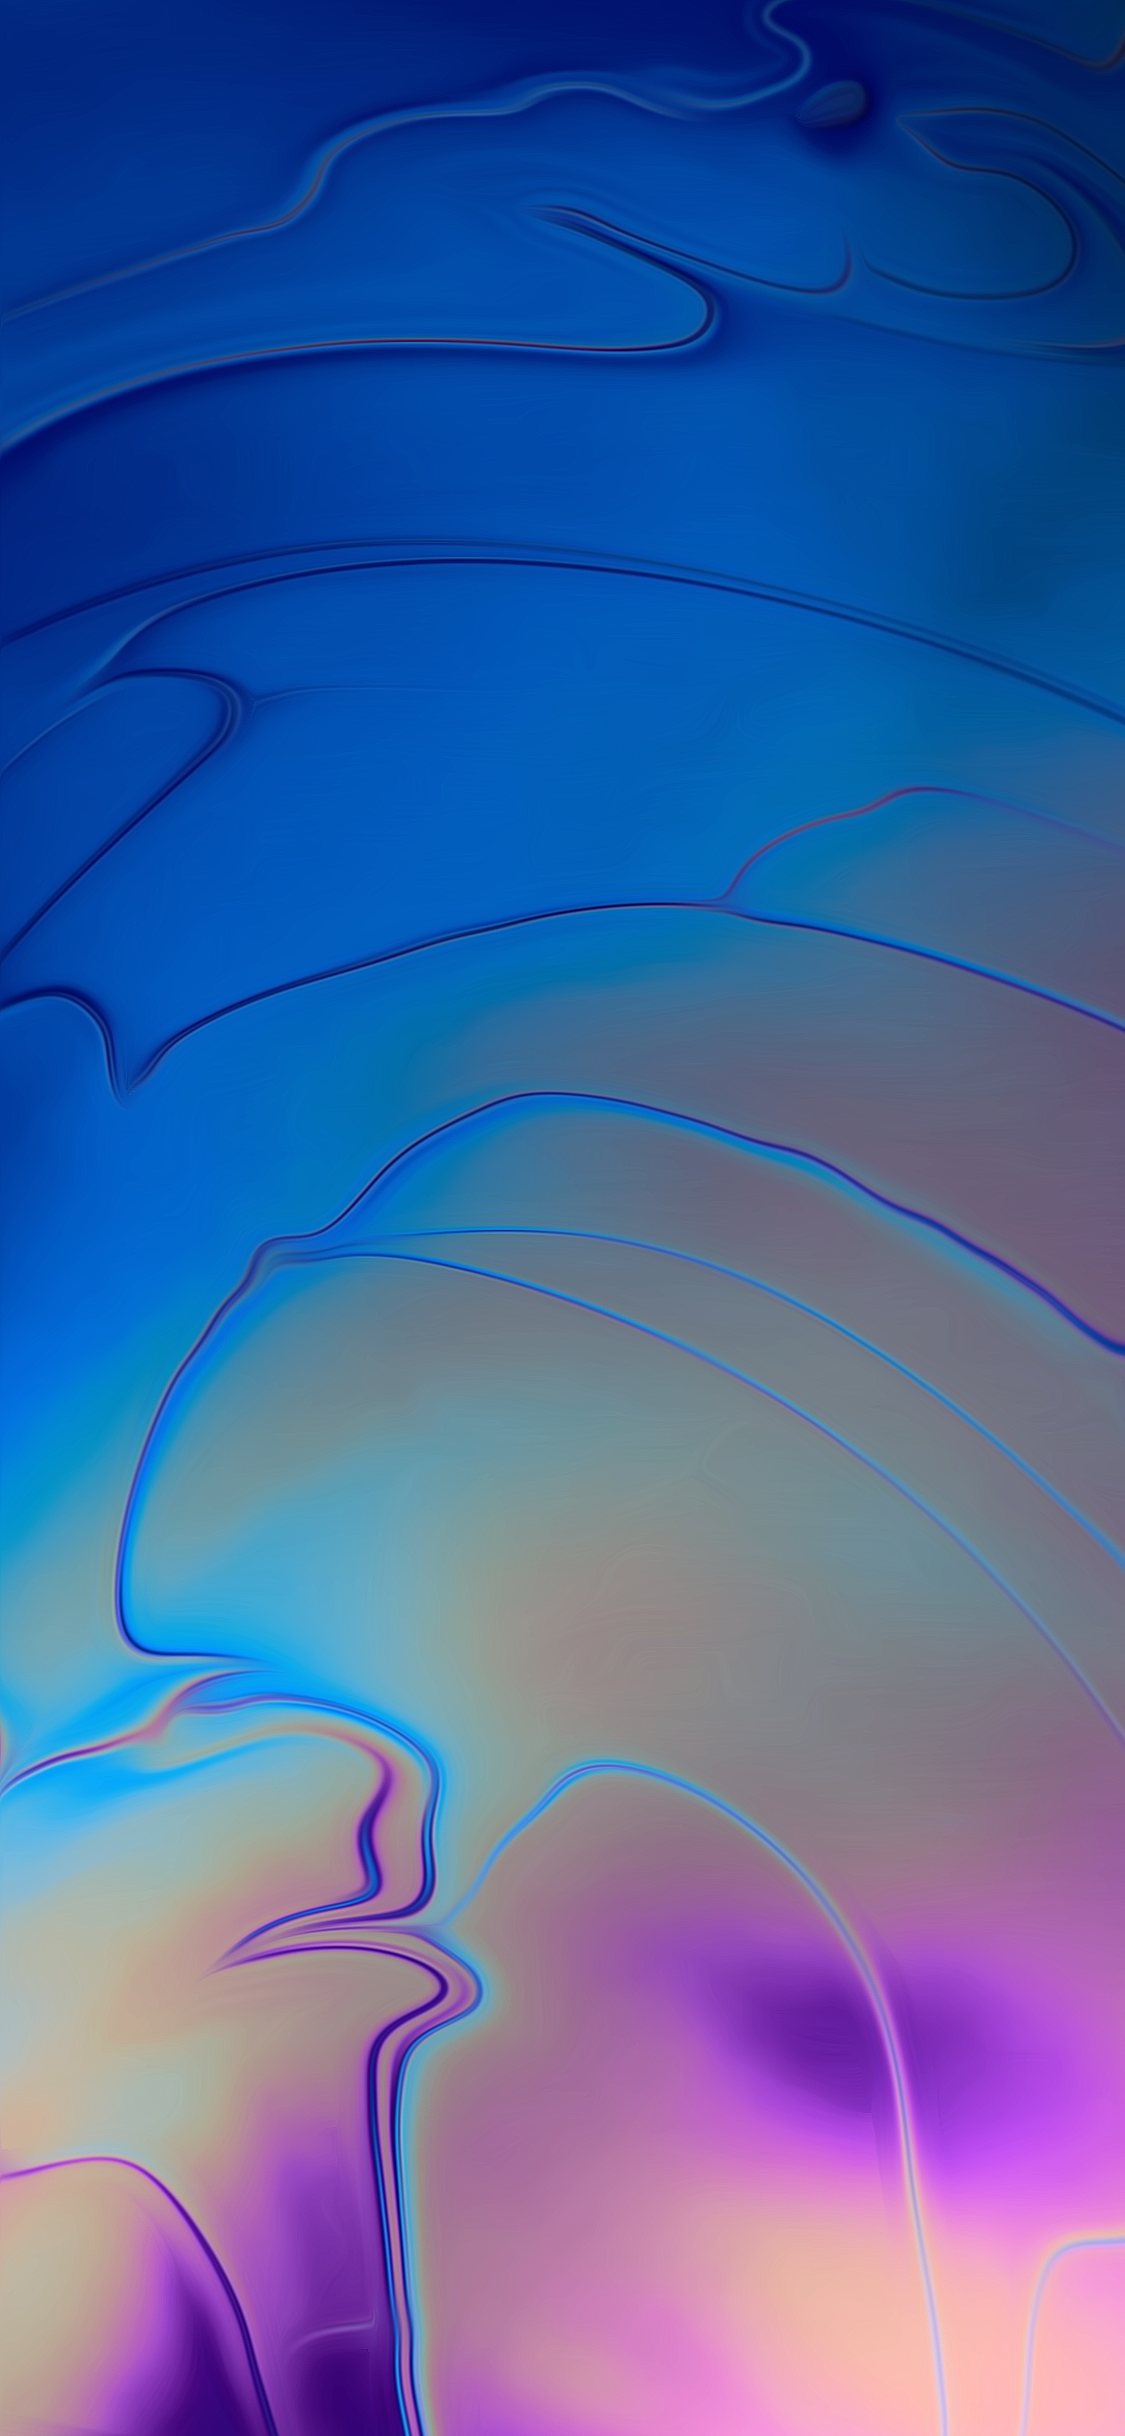 neues macbook wallpaper,blau,wasser,lila,elektrisches blau,himmel